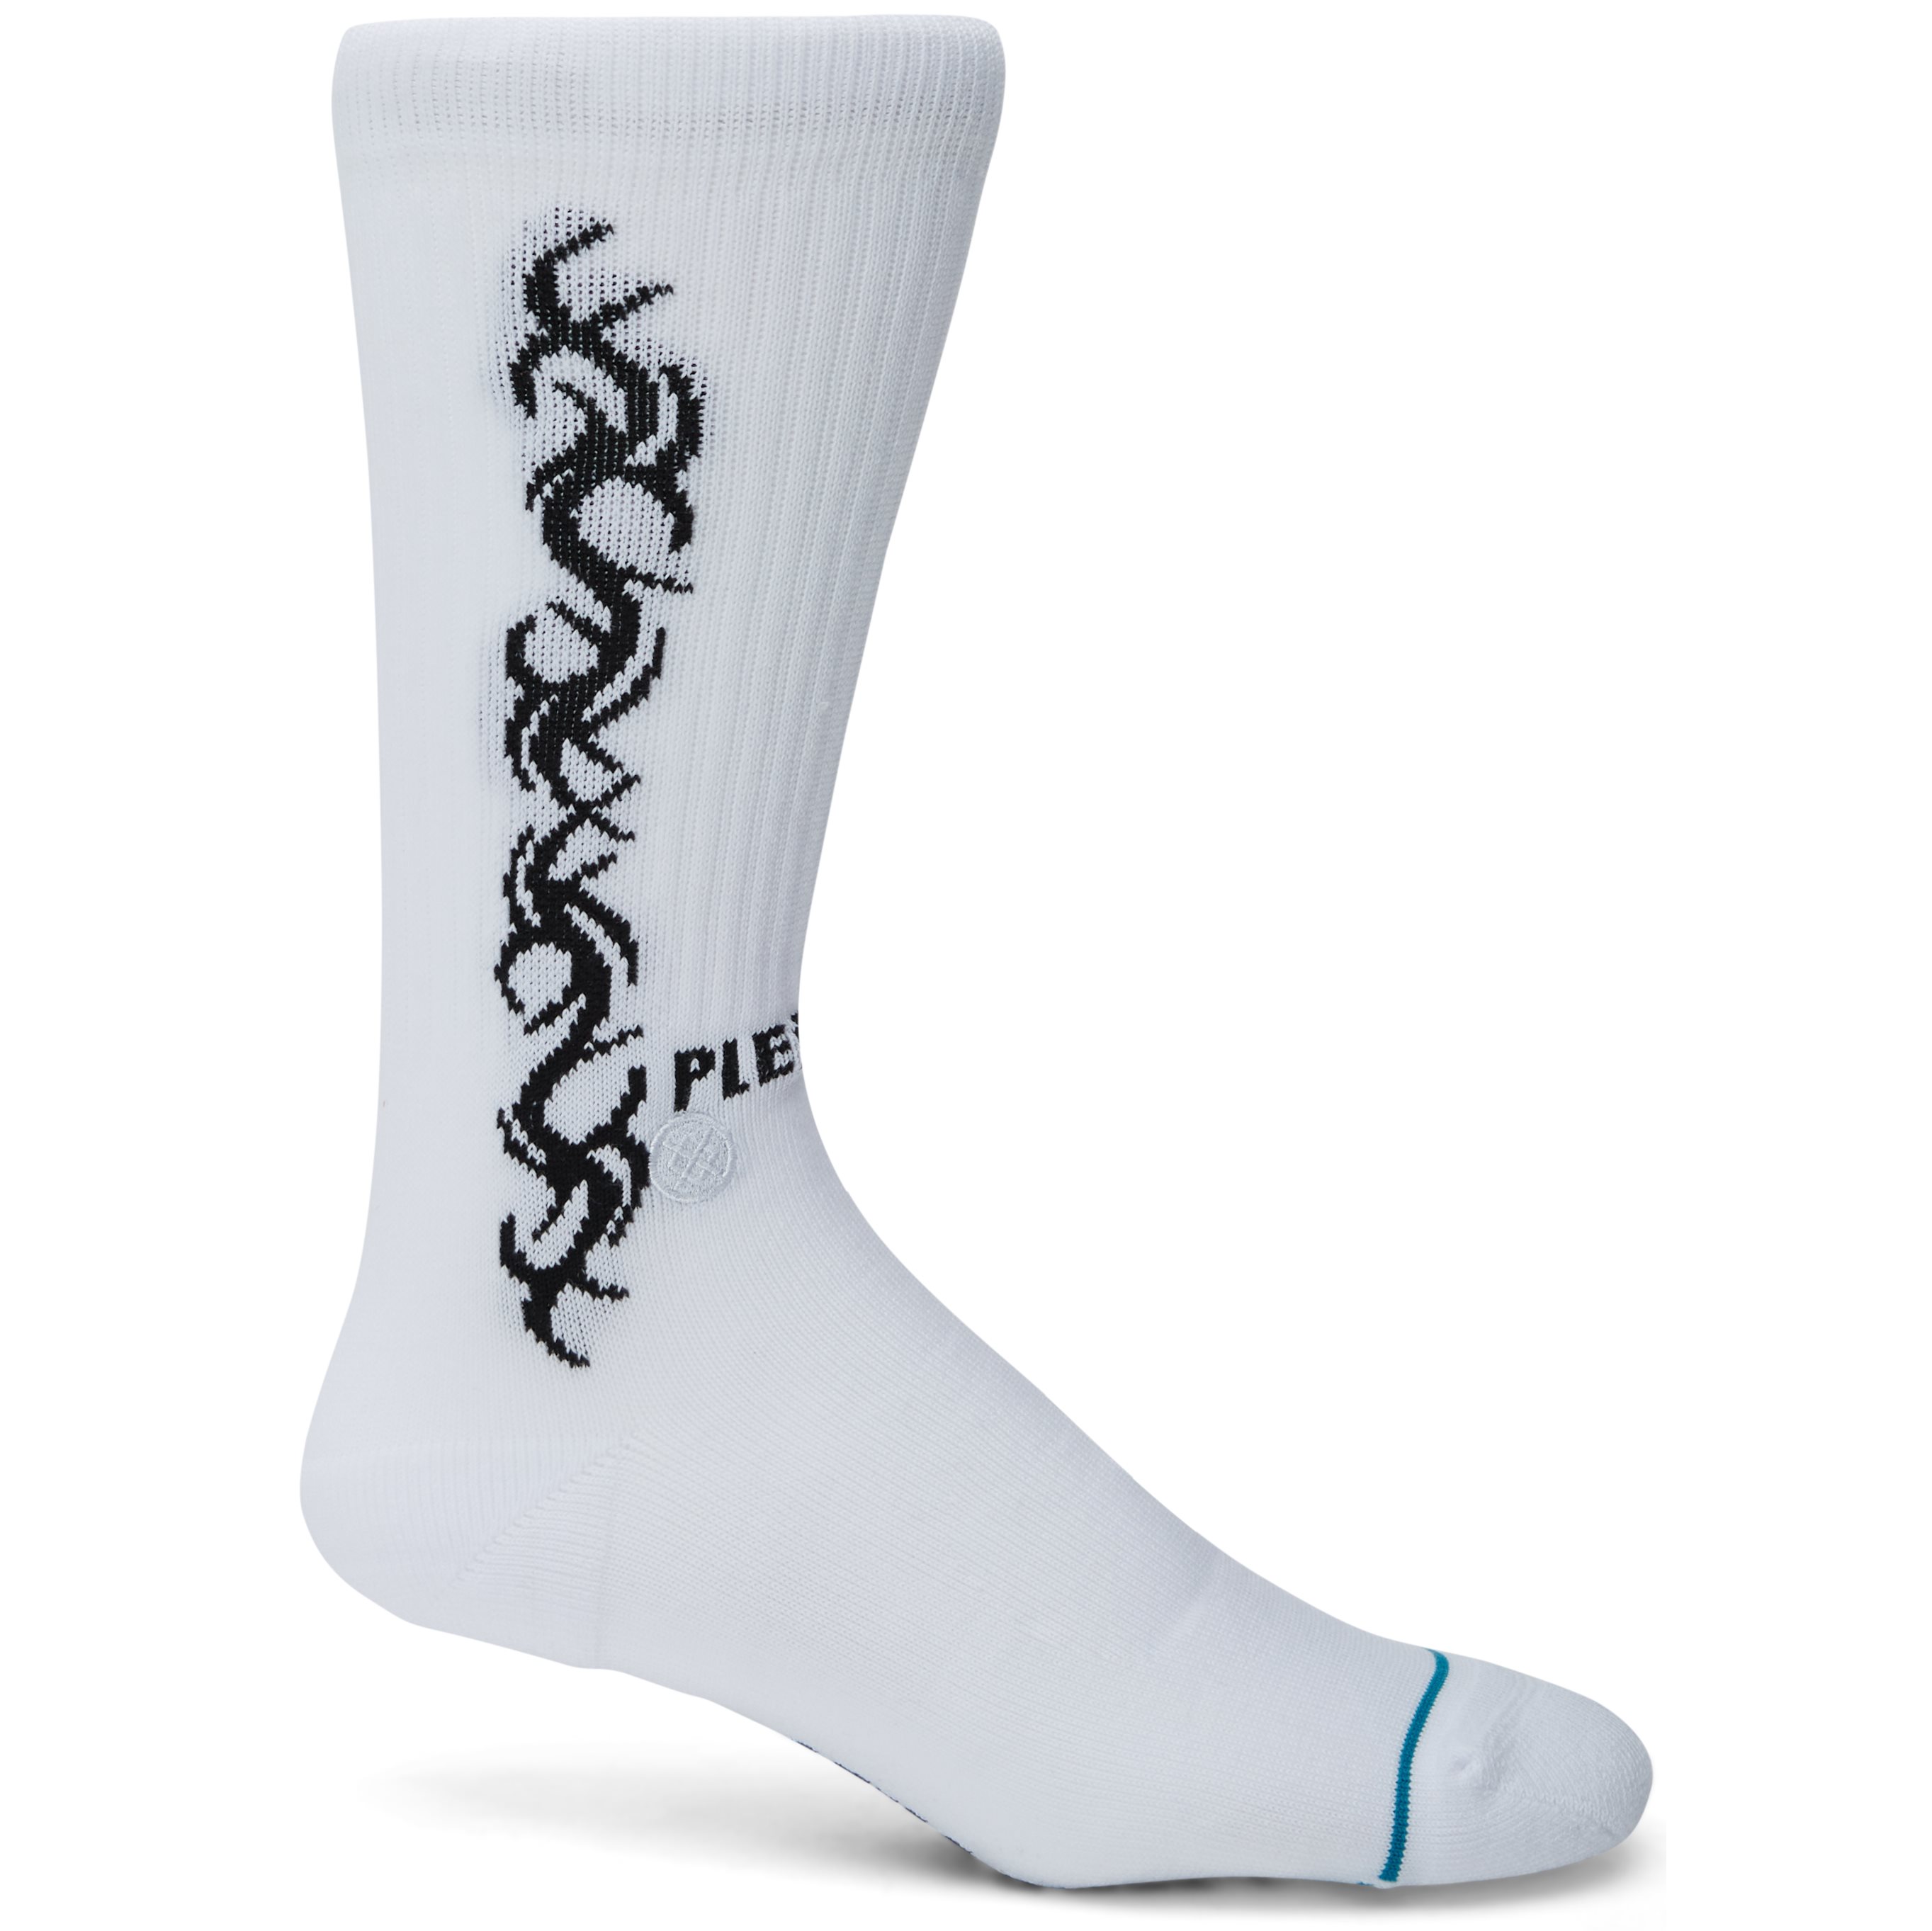 Tribal Socks - Socks - White